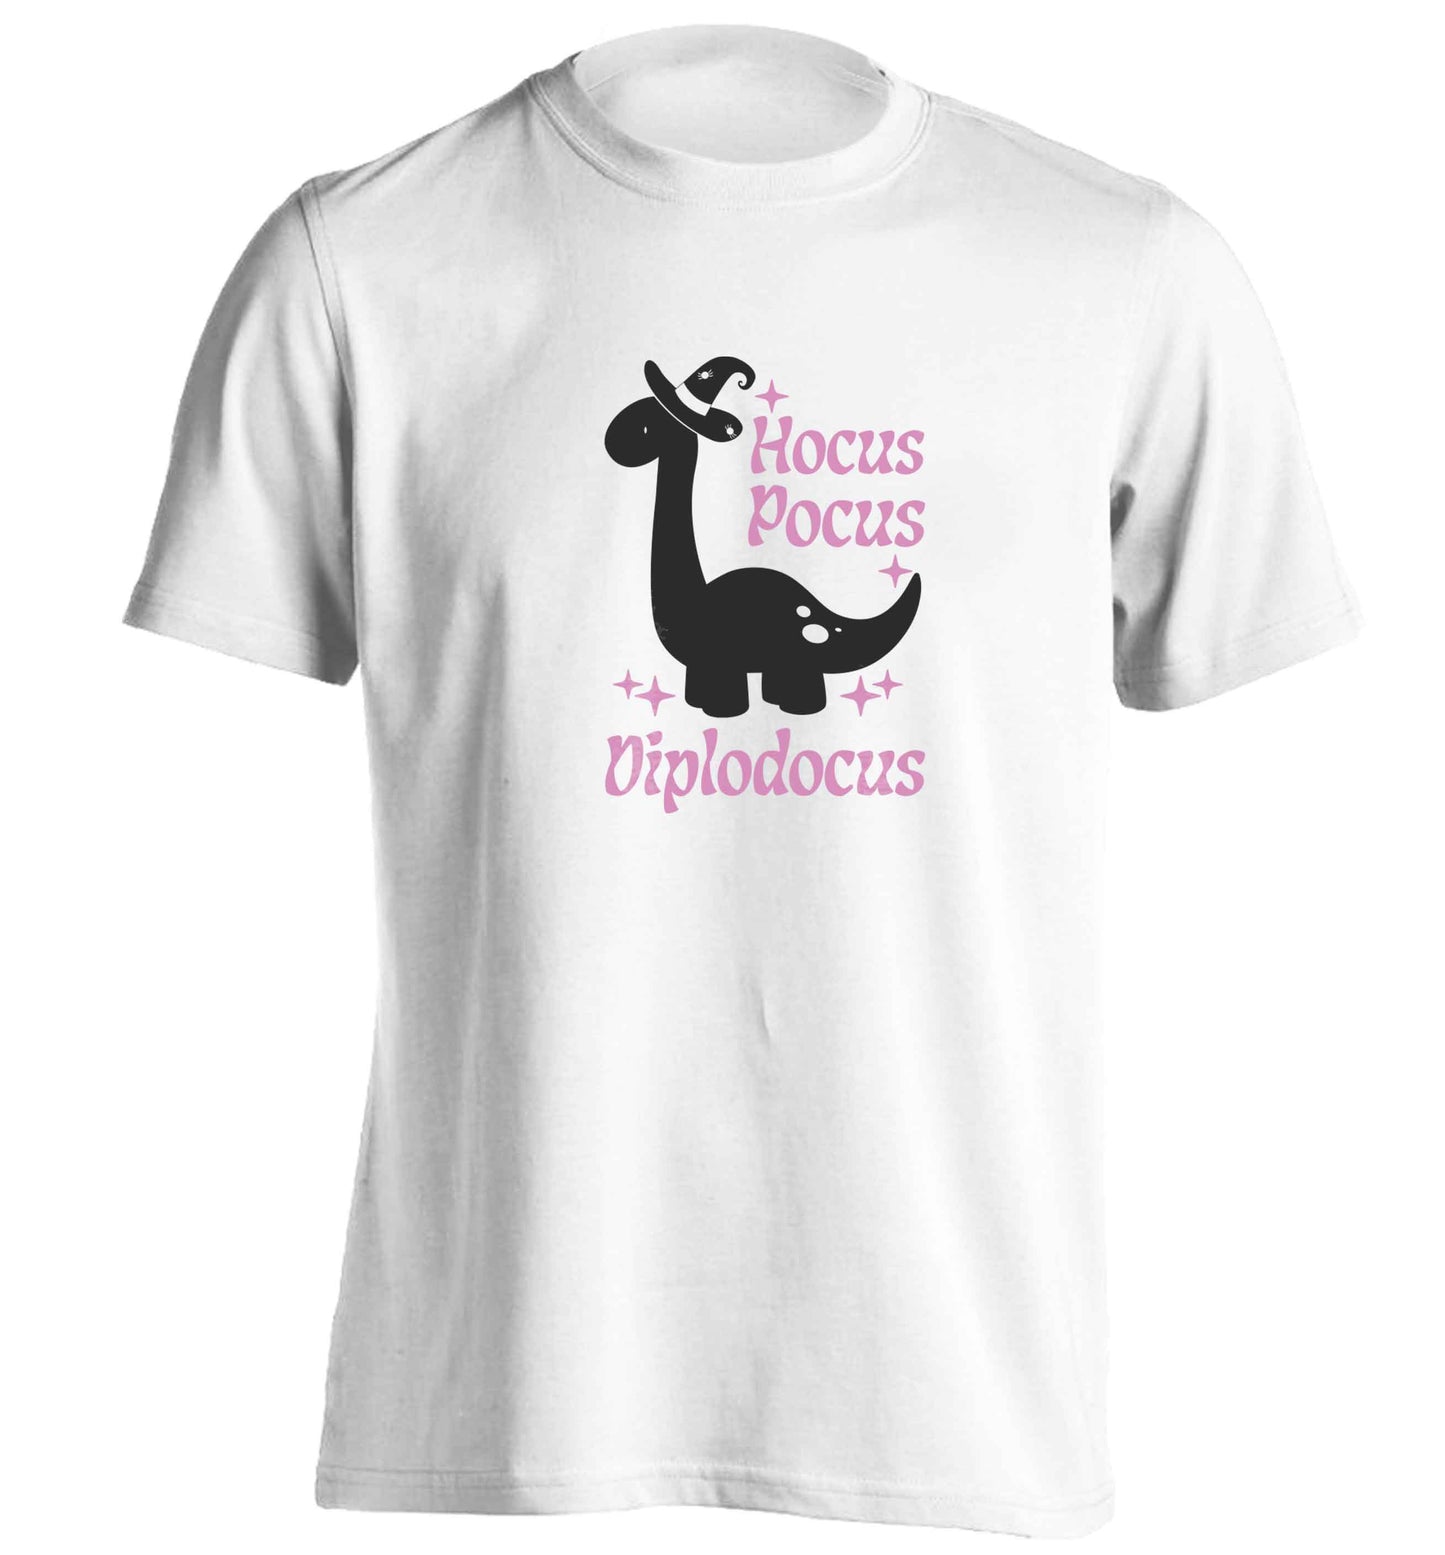 Hocus pocus diplodocus Kit adults unisex white Tshirt 2XL